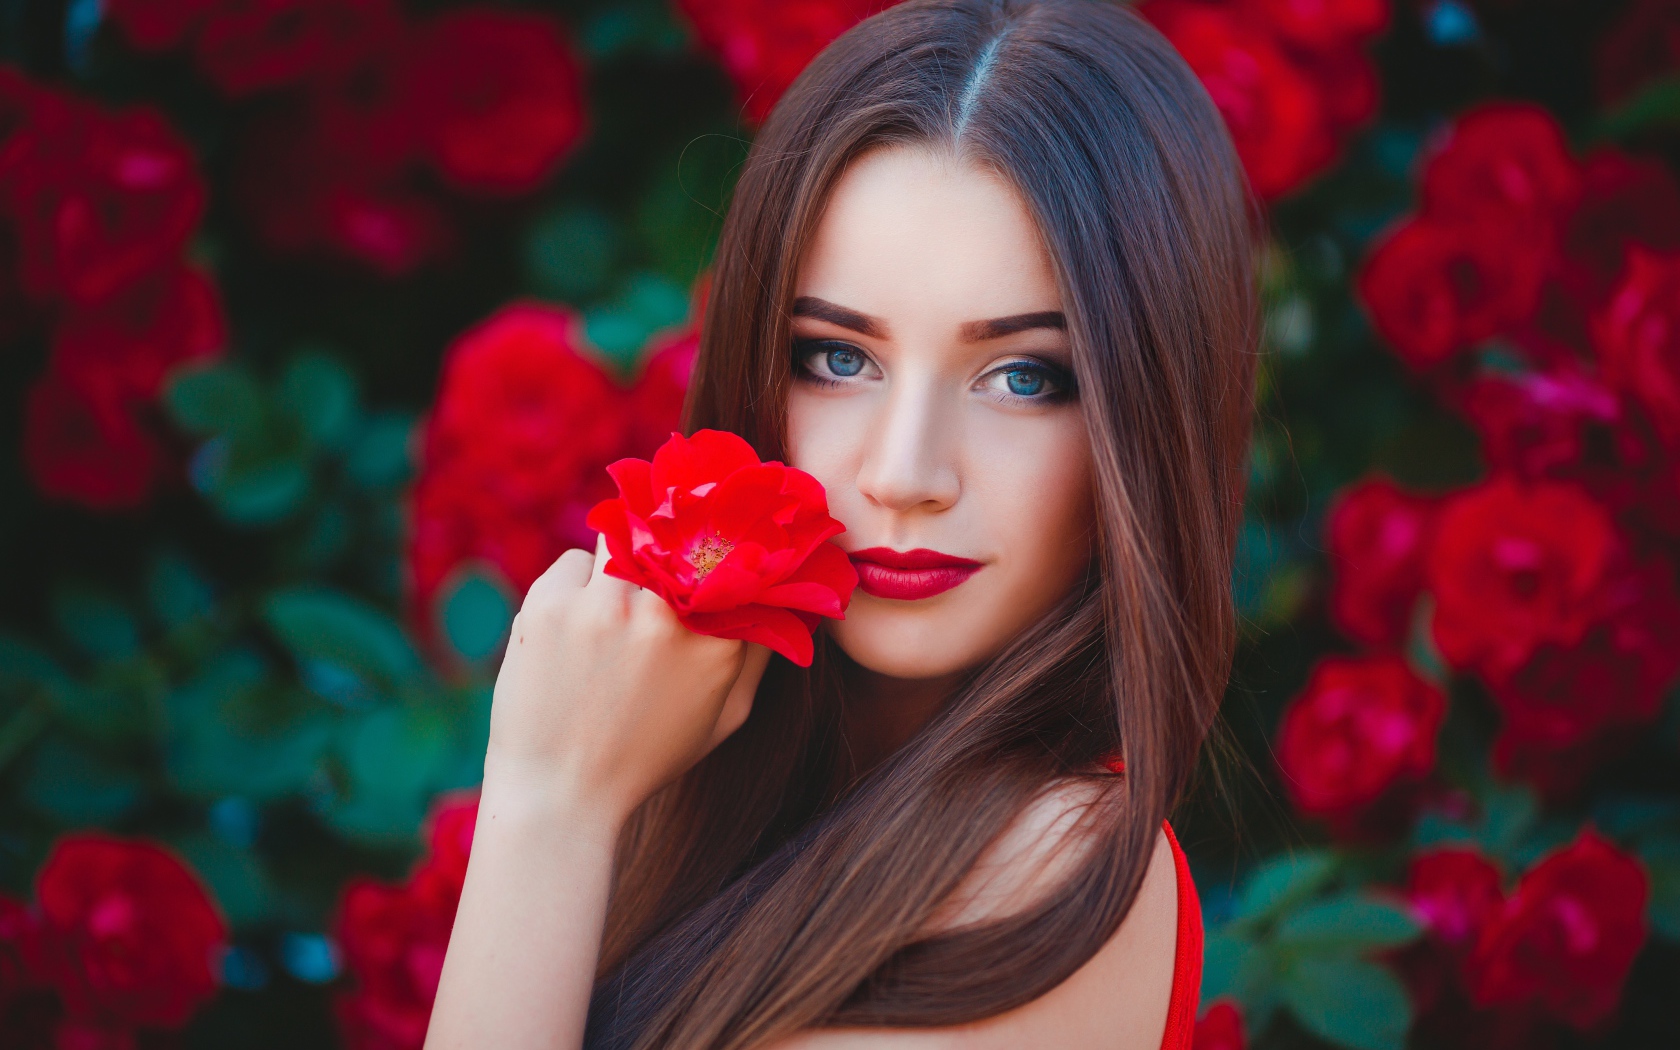 Красивая голубоглазая девушка с красной розой в руке